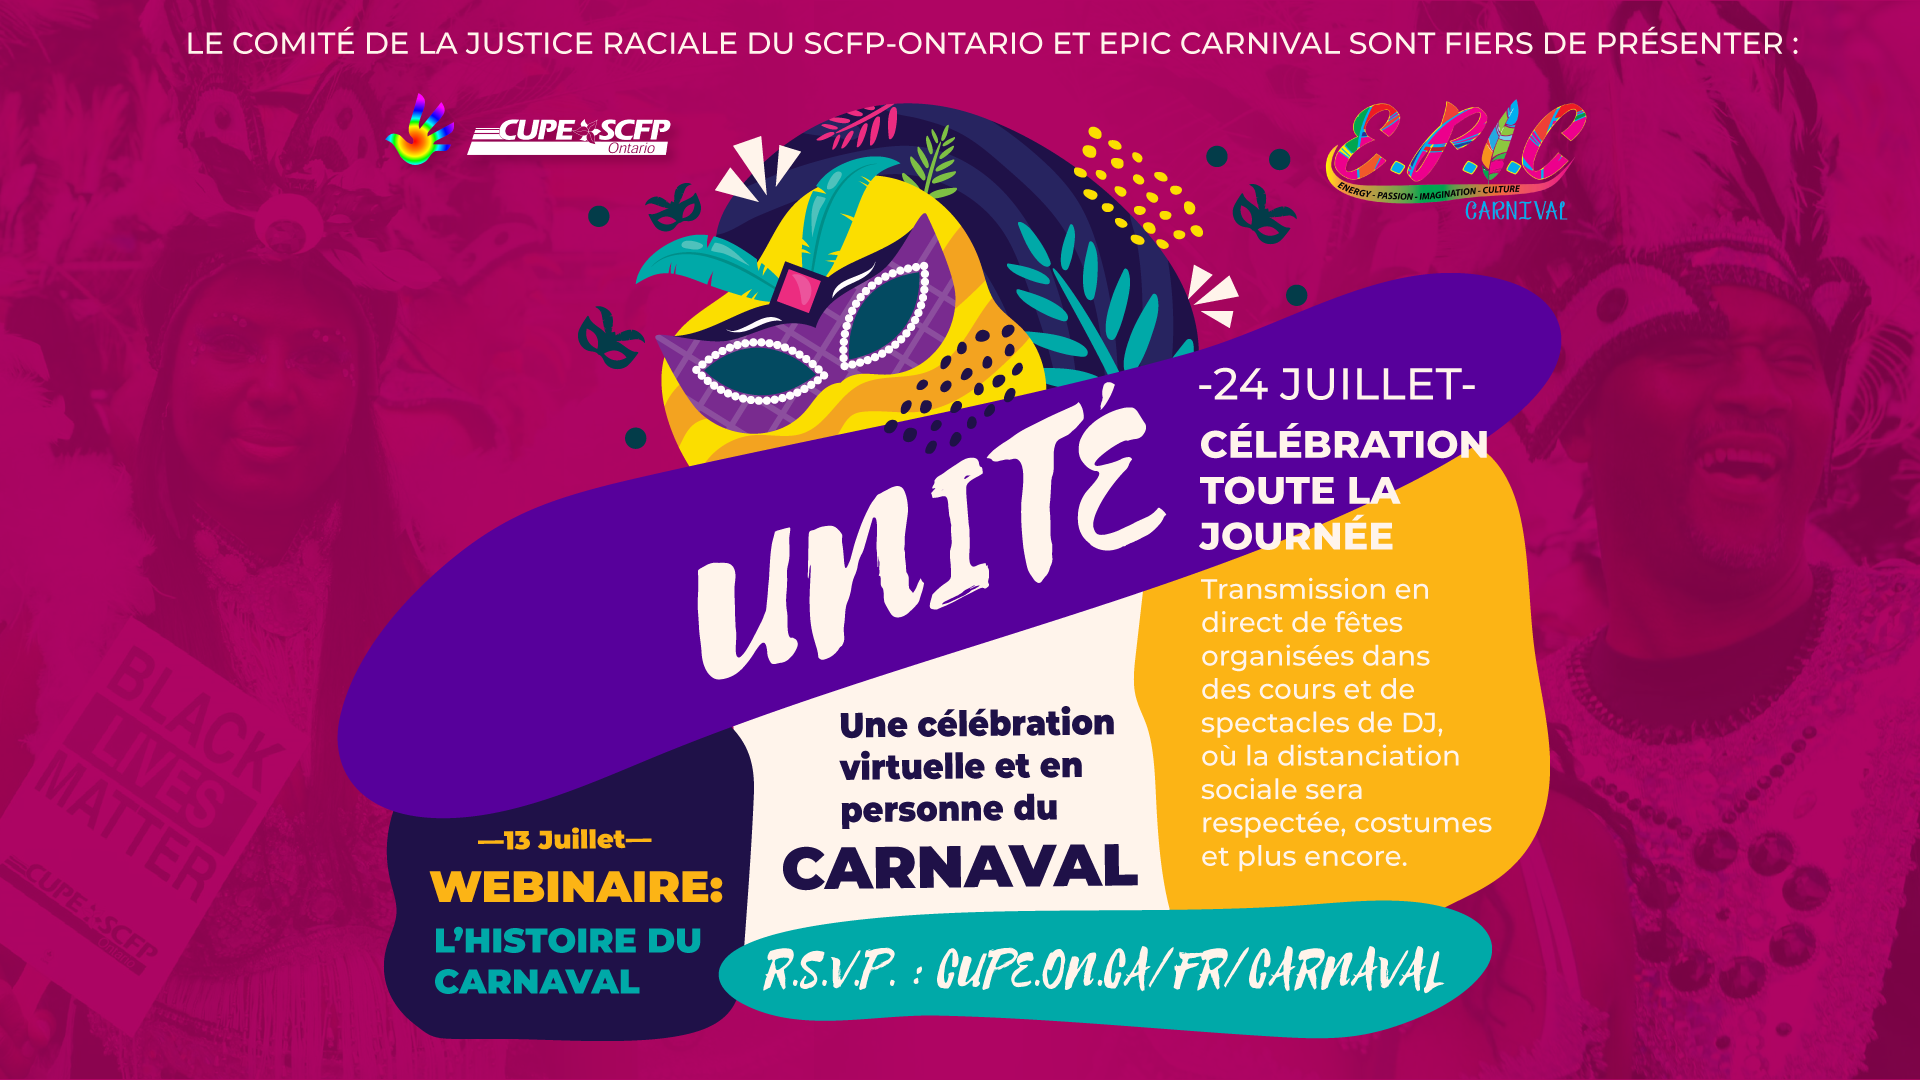 Unite: Une celebration virtuelle et en personne du Carnaval